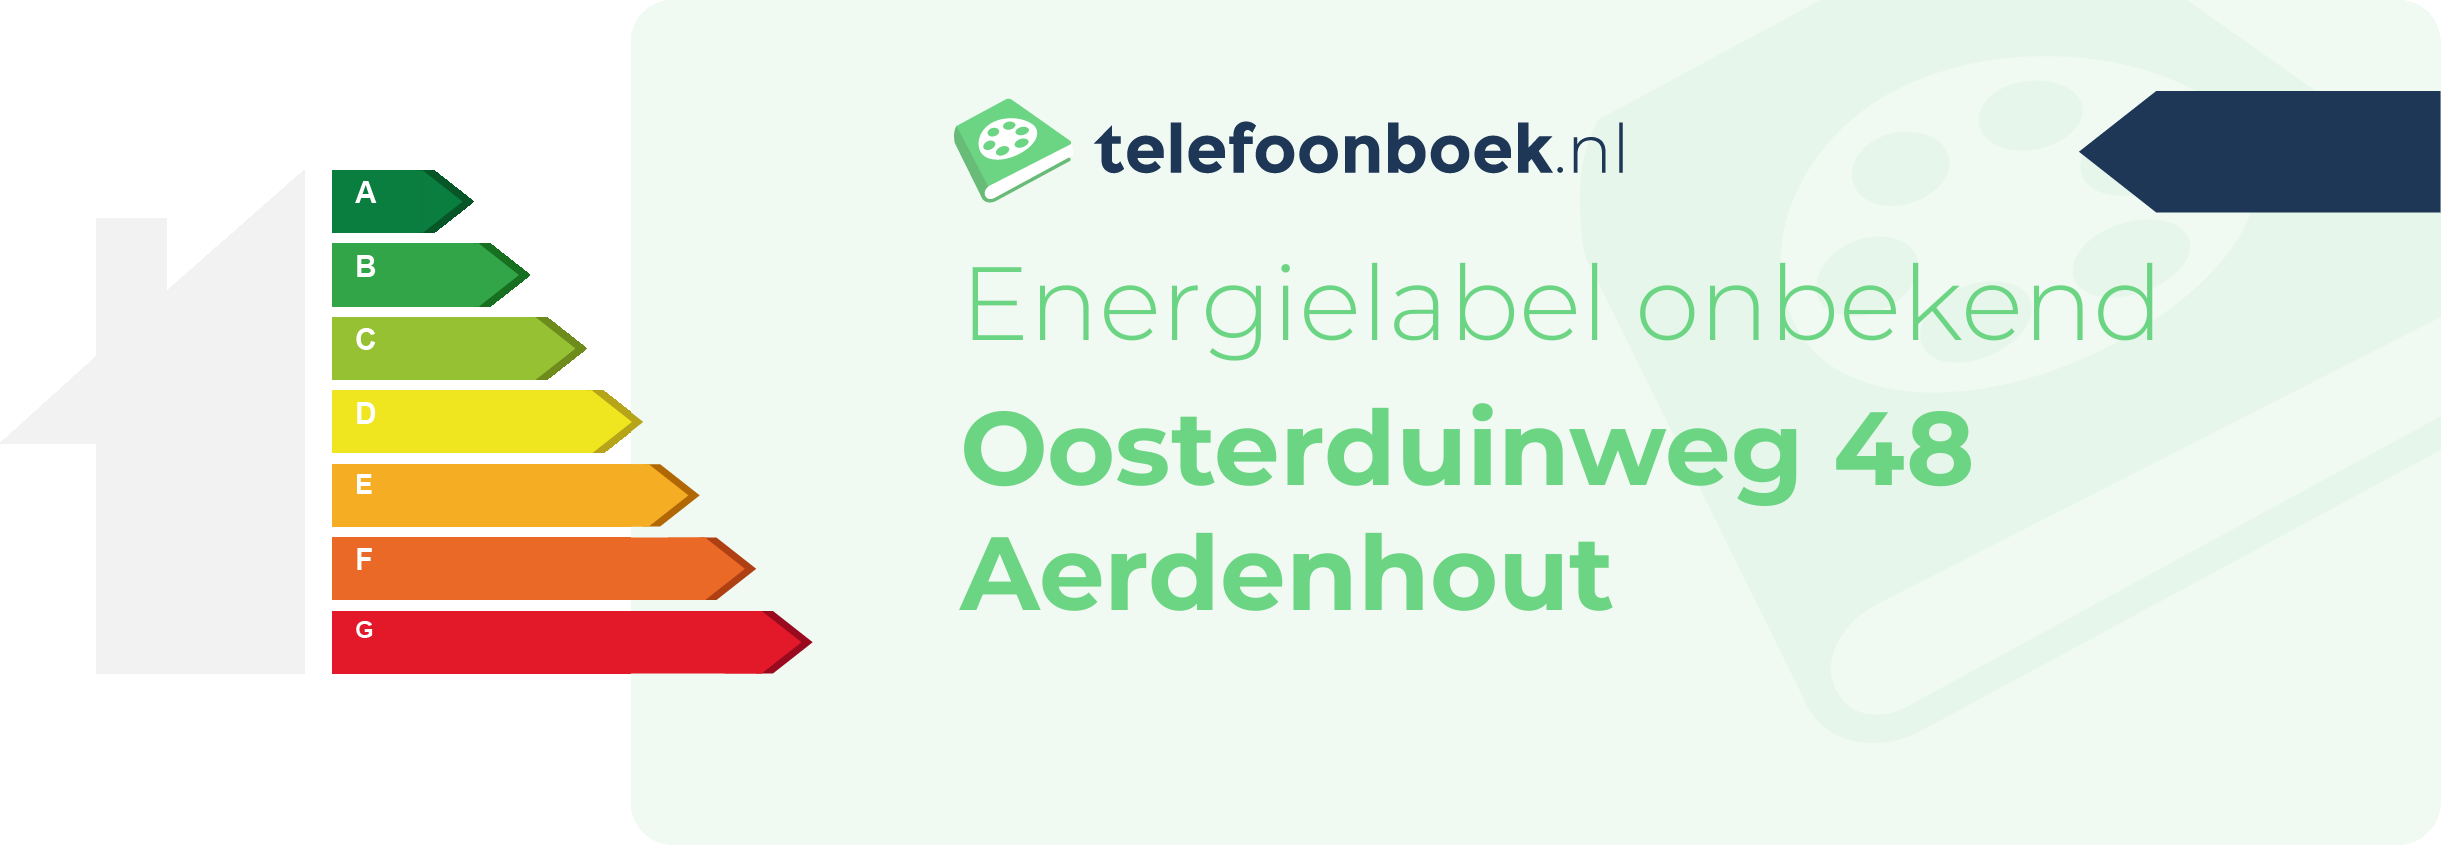 Energielabel Oosterduinweg 48 Aerdenhout